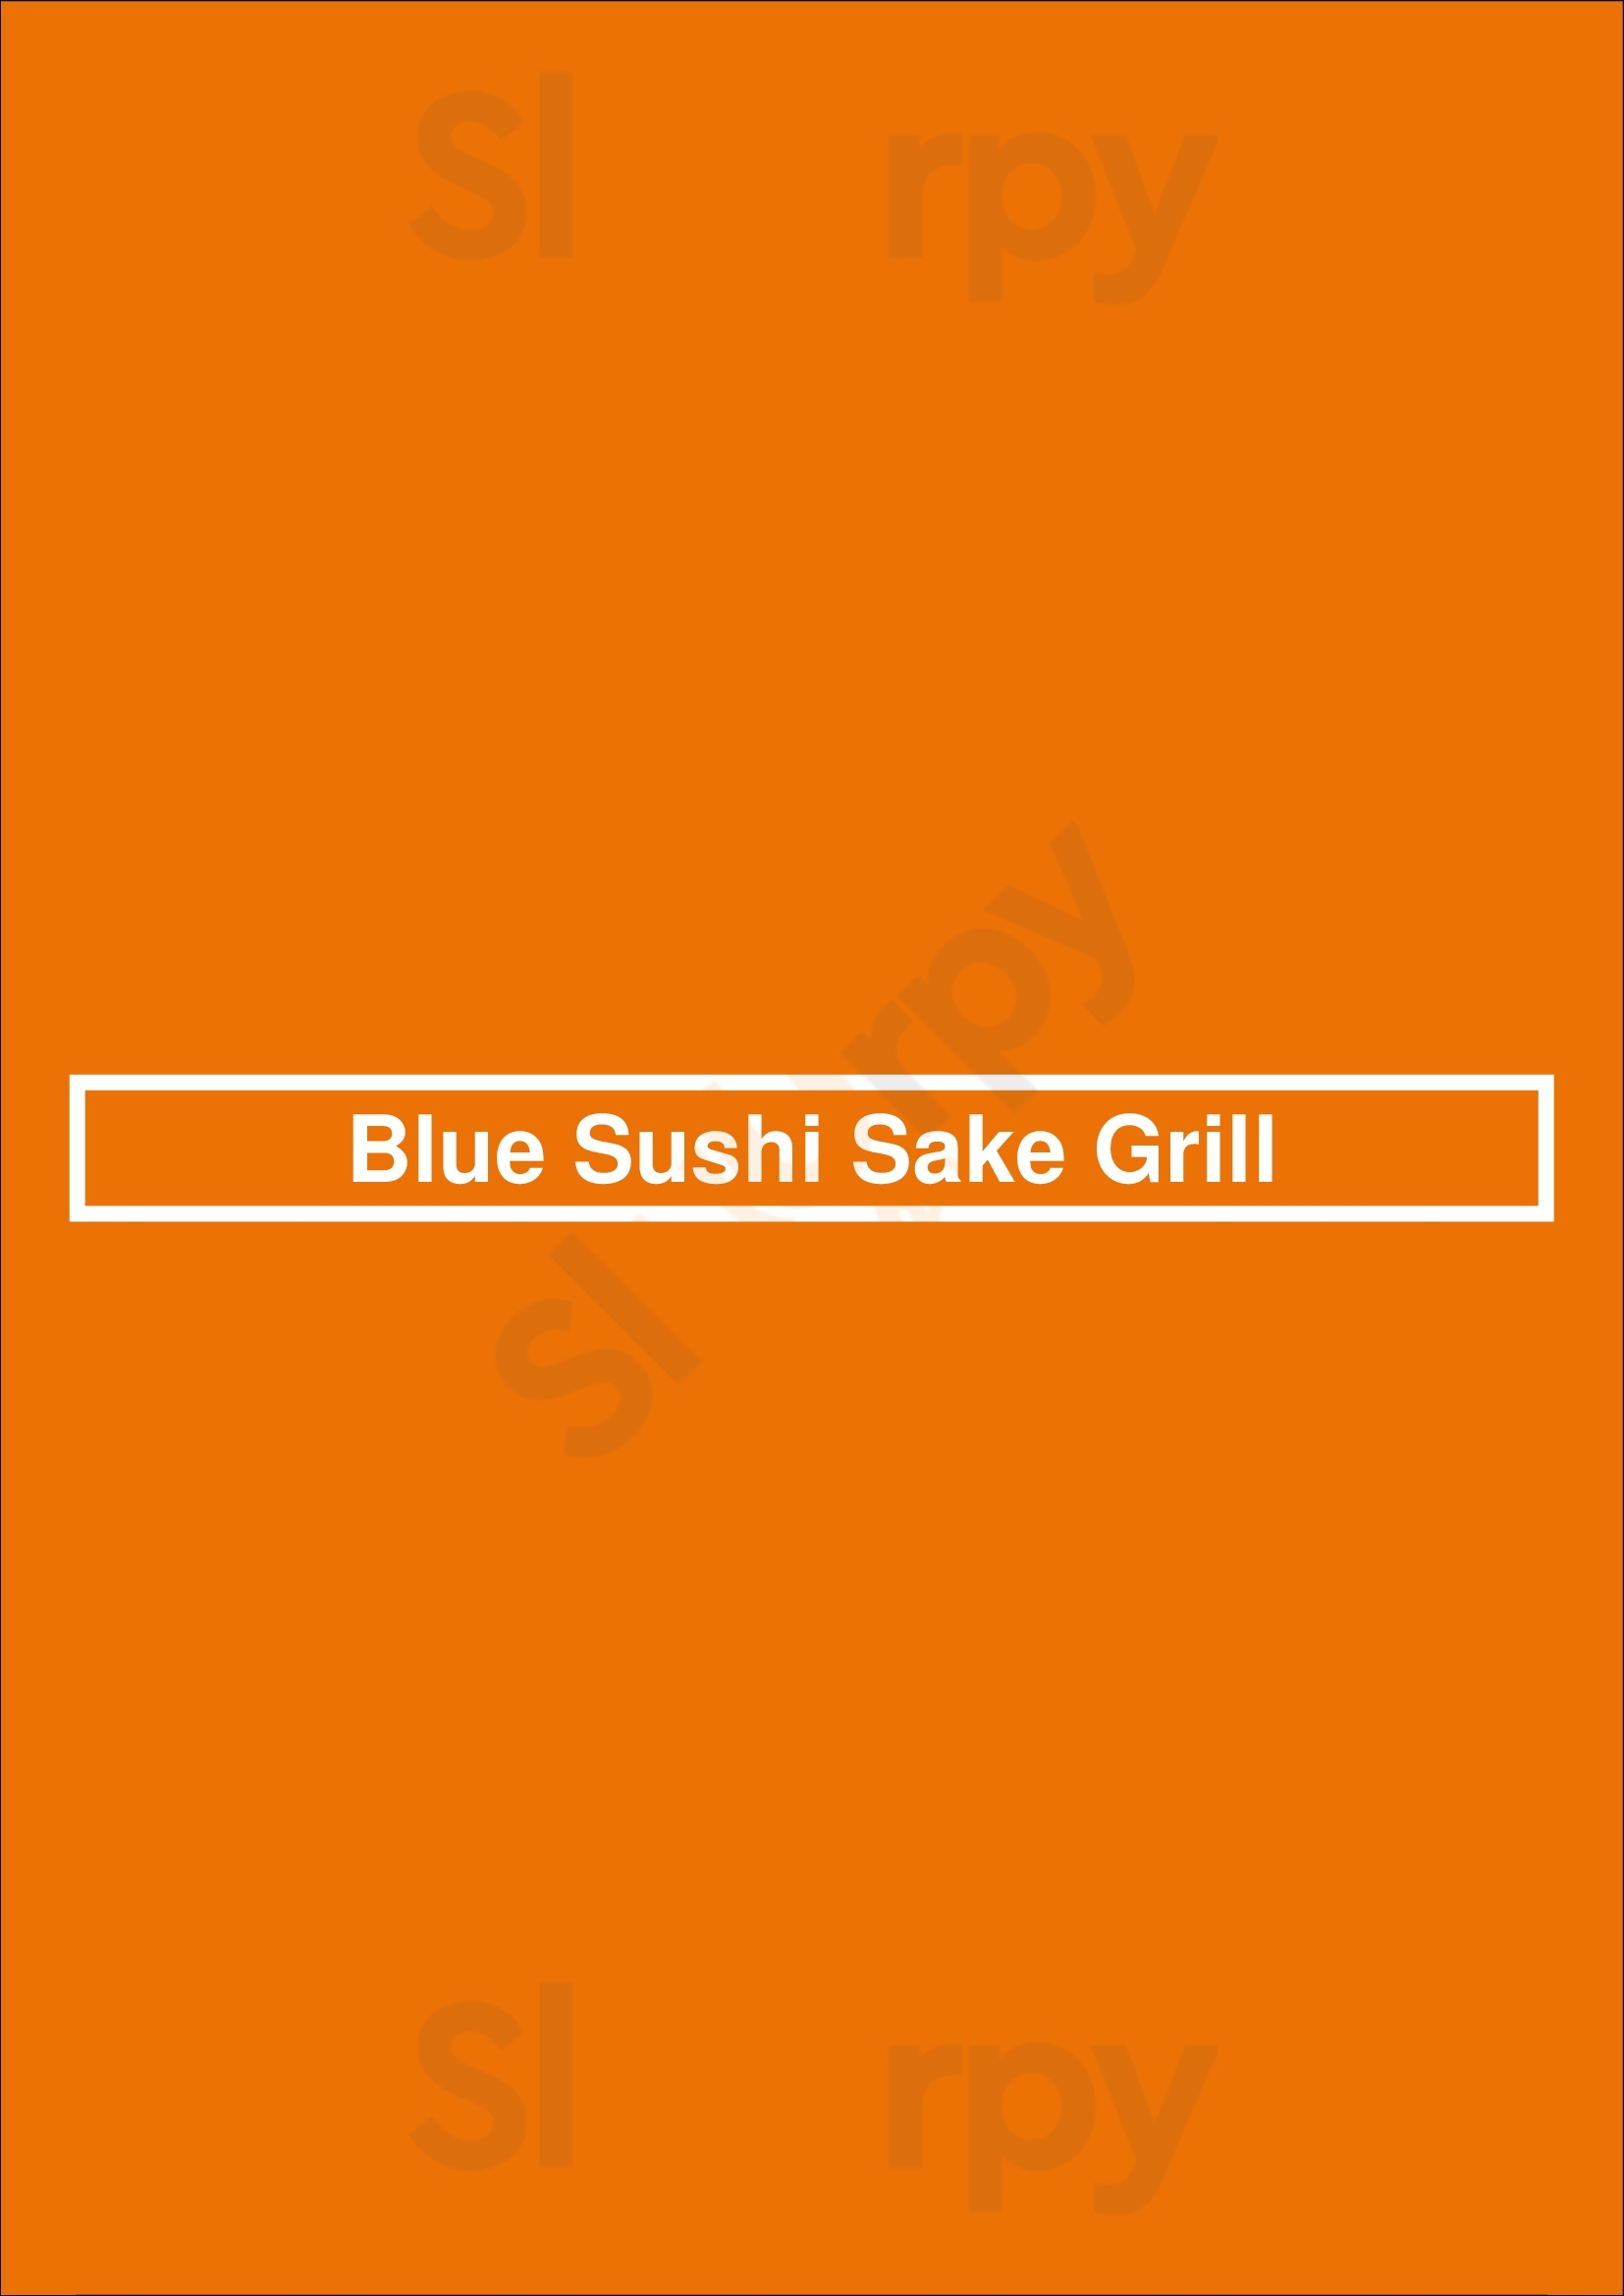 Blue Sushi Sake Grill Dallas Menu - 1